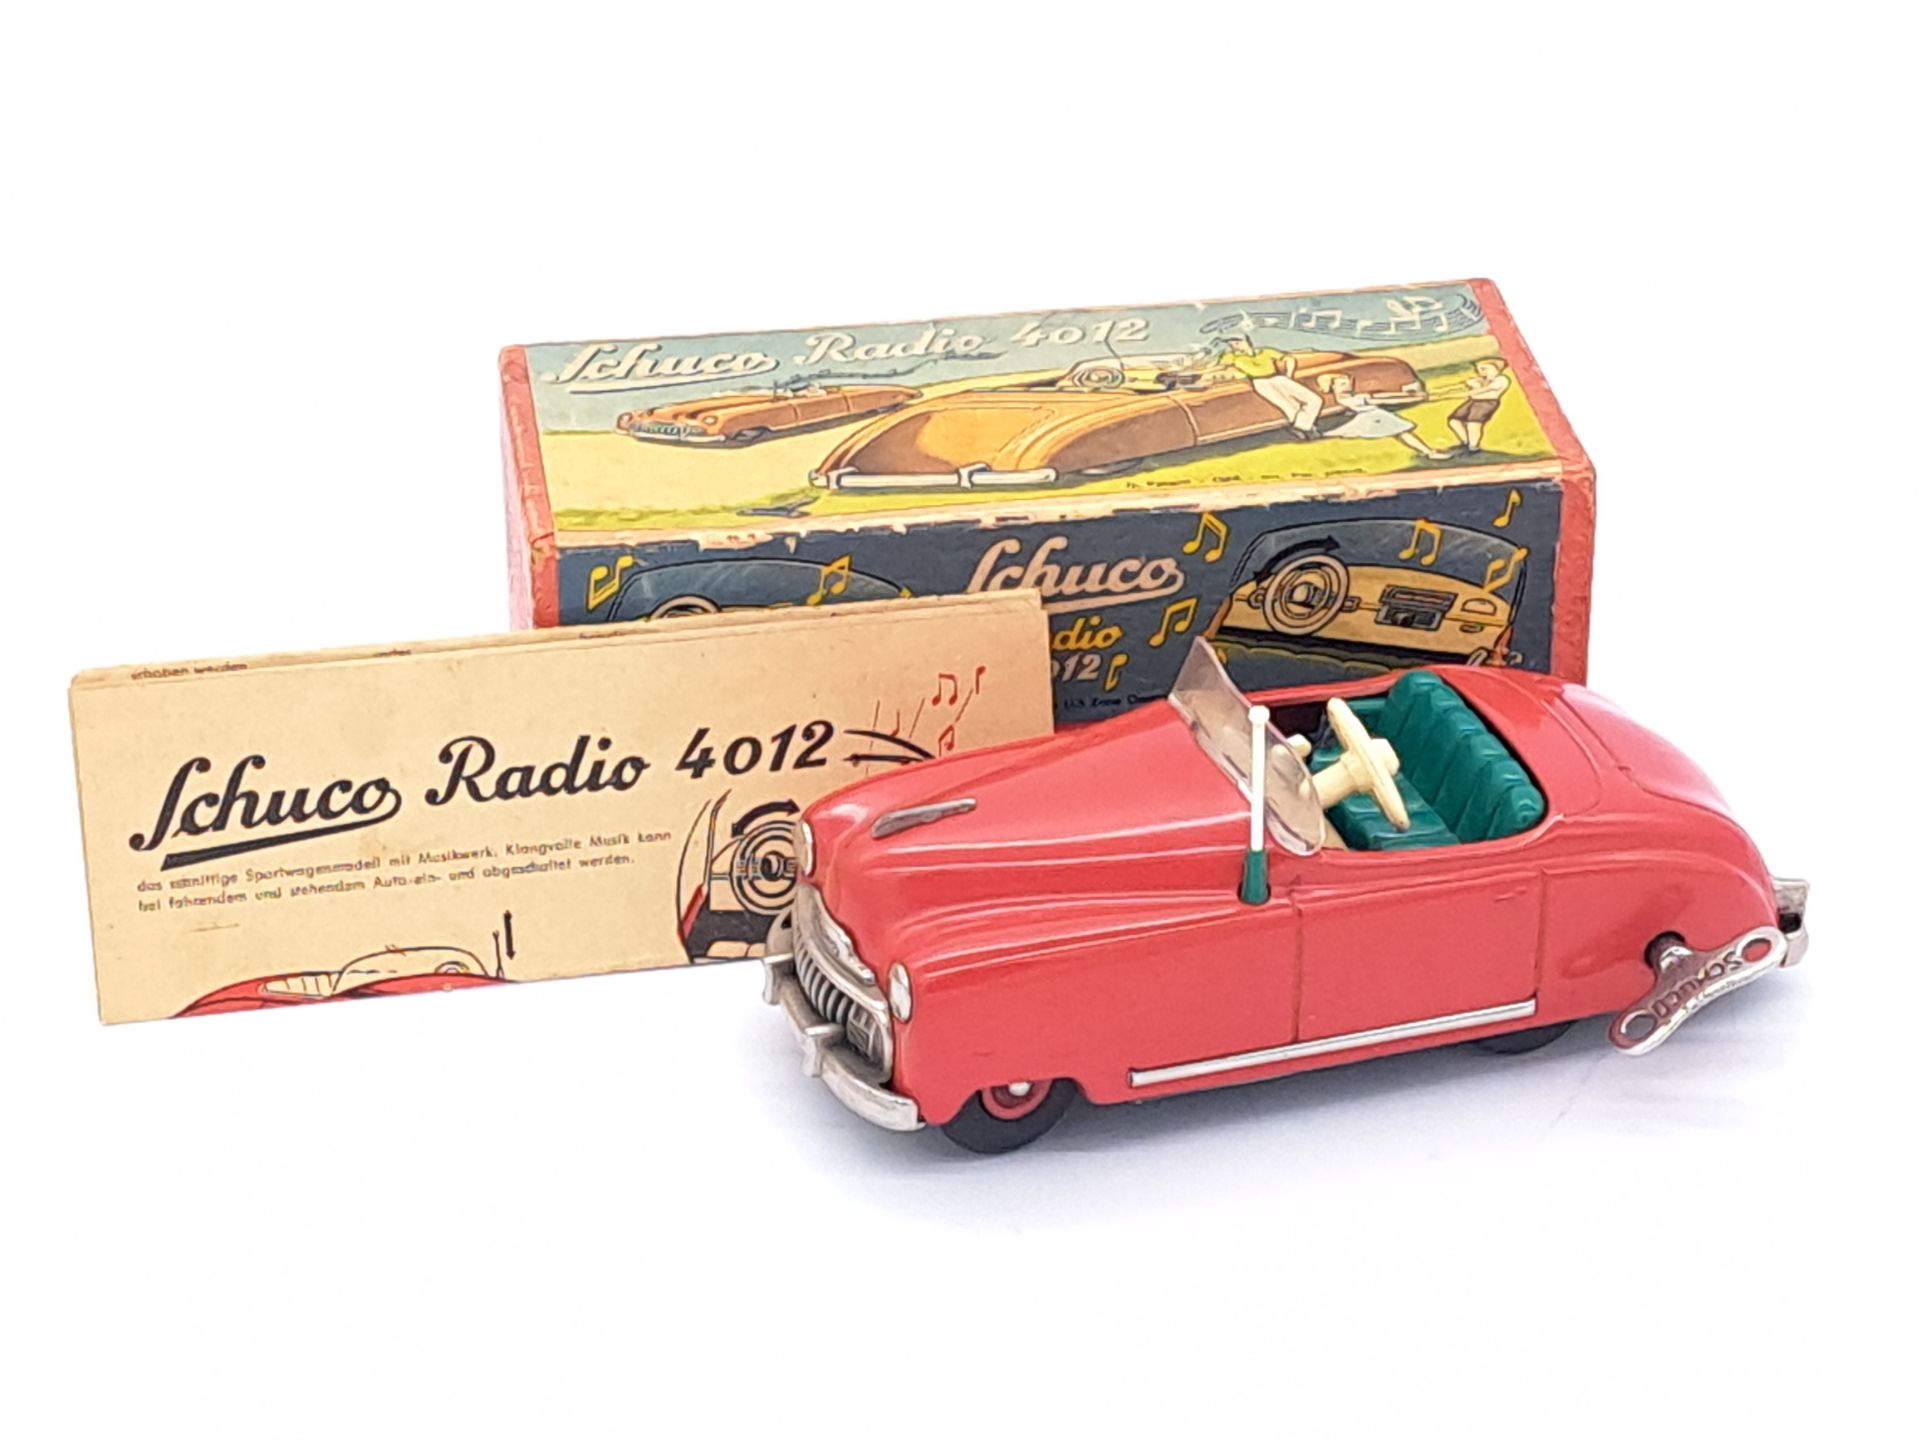 Schuco No.4012 Radio Car